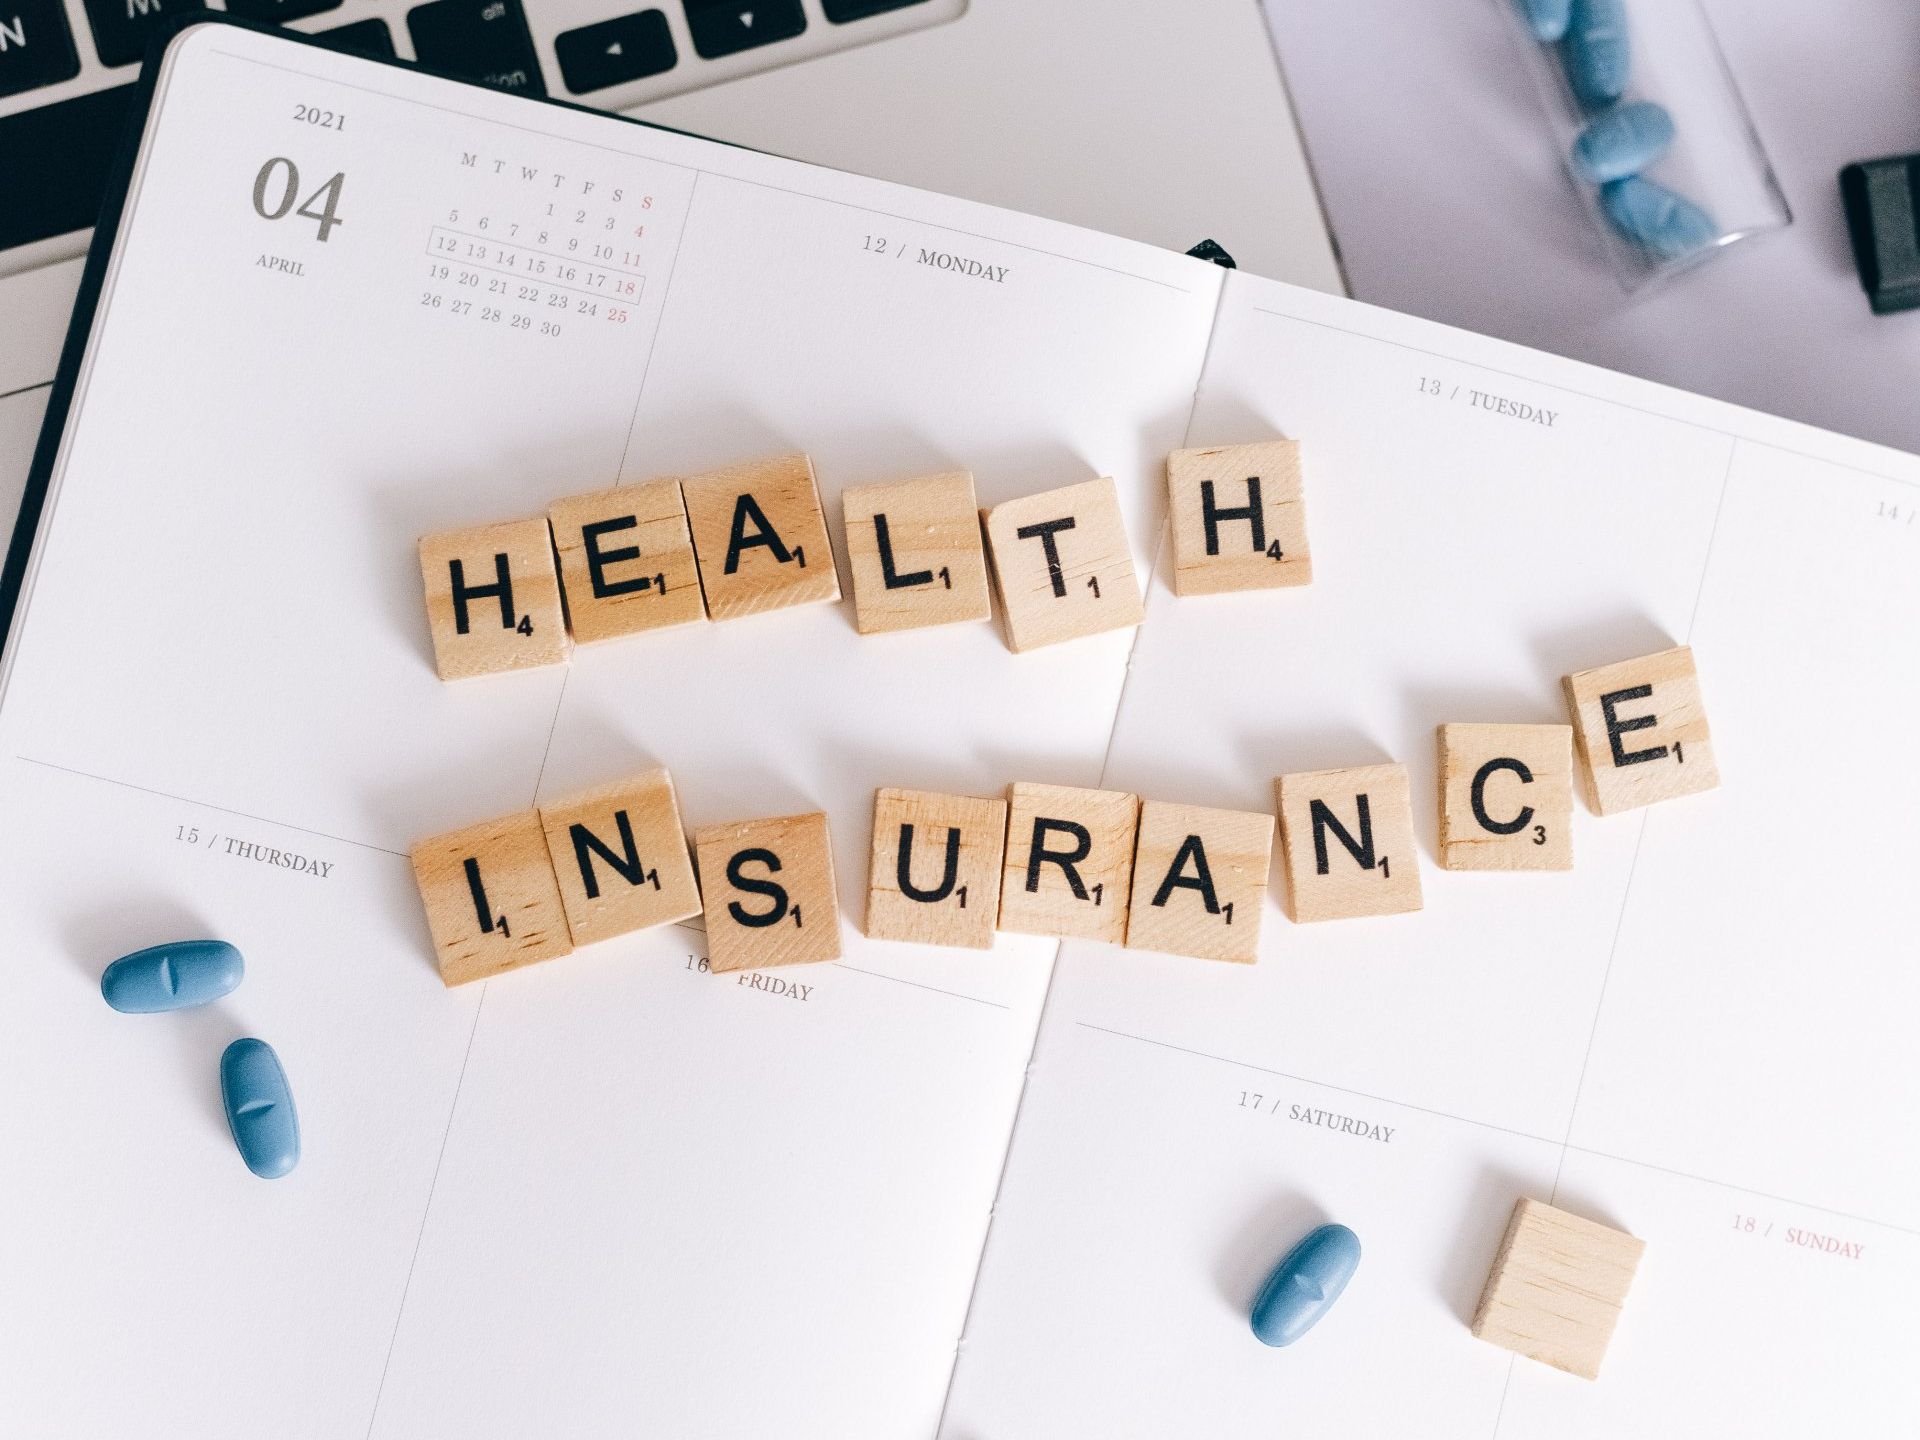 The word health insurance is written in scrabble blocks on a calendar.